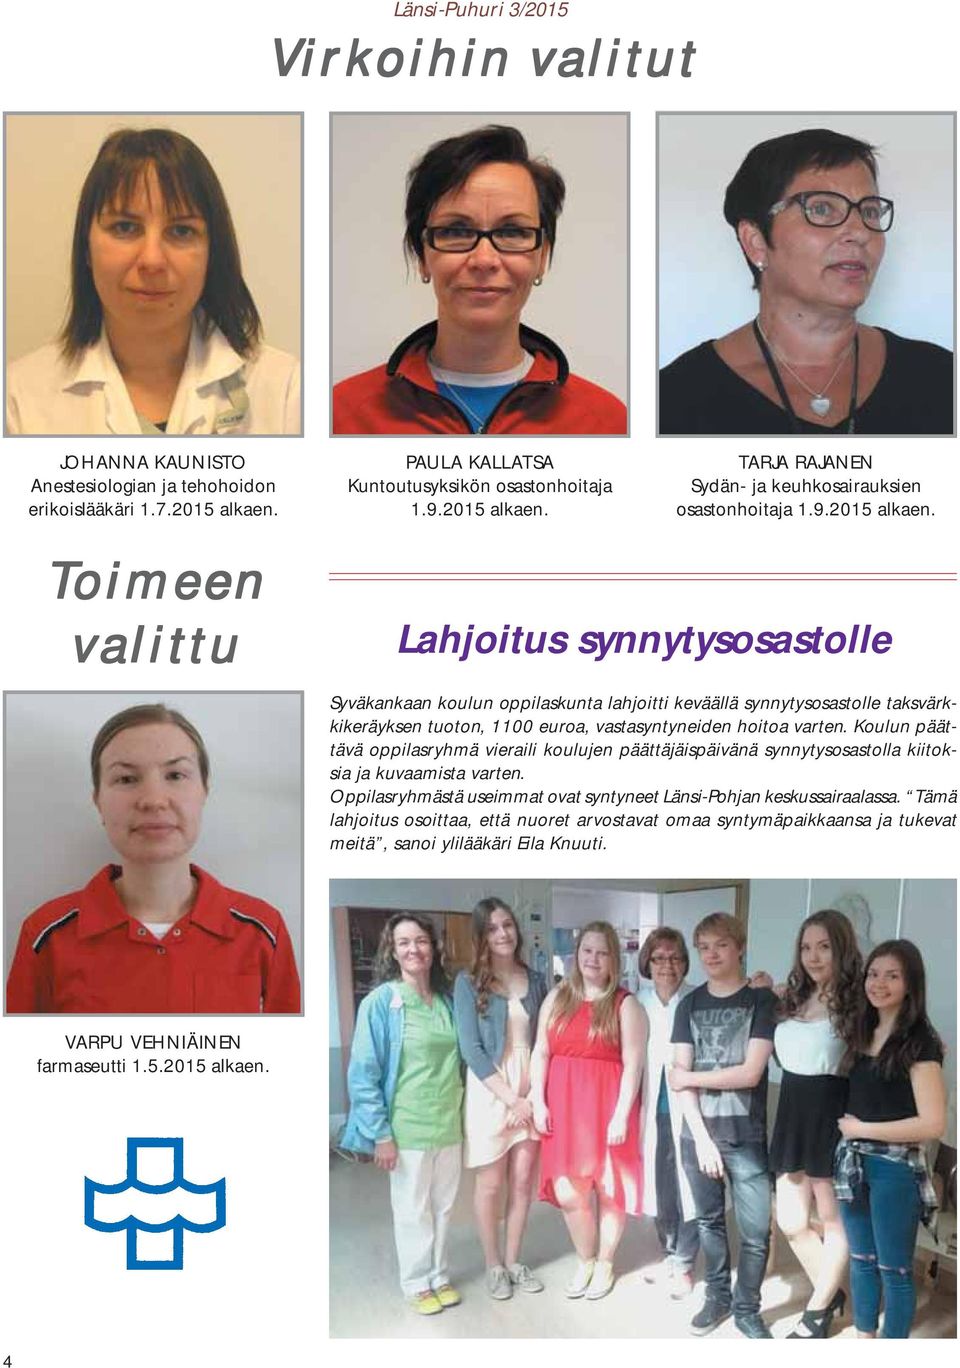 Toimeen valittu Lahjoitus synnytysosastolle Syväkankaan koulun oppilaskunta lahjoitti keväällä synnytysosastolle taksvärkkikeräyksen tuoton, 1100 euroa, vastasyntyneiden hoitoa varten.